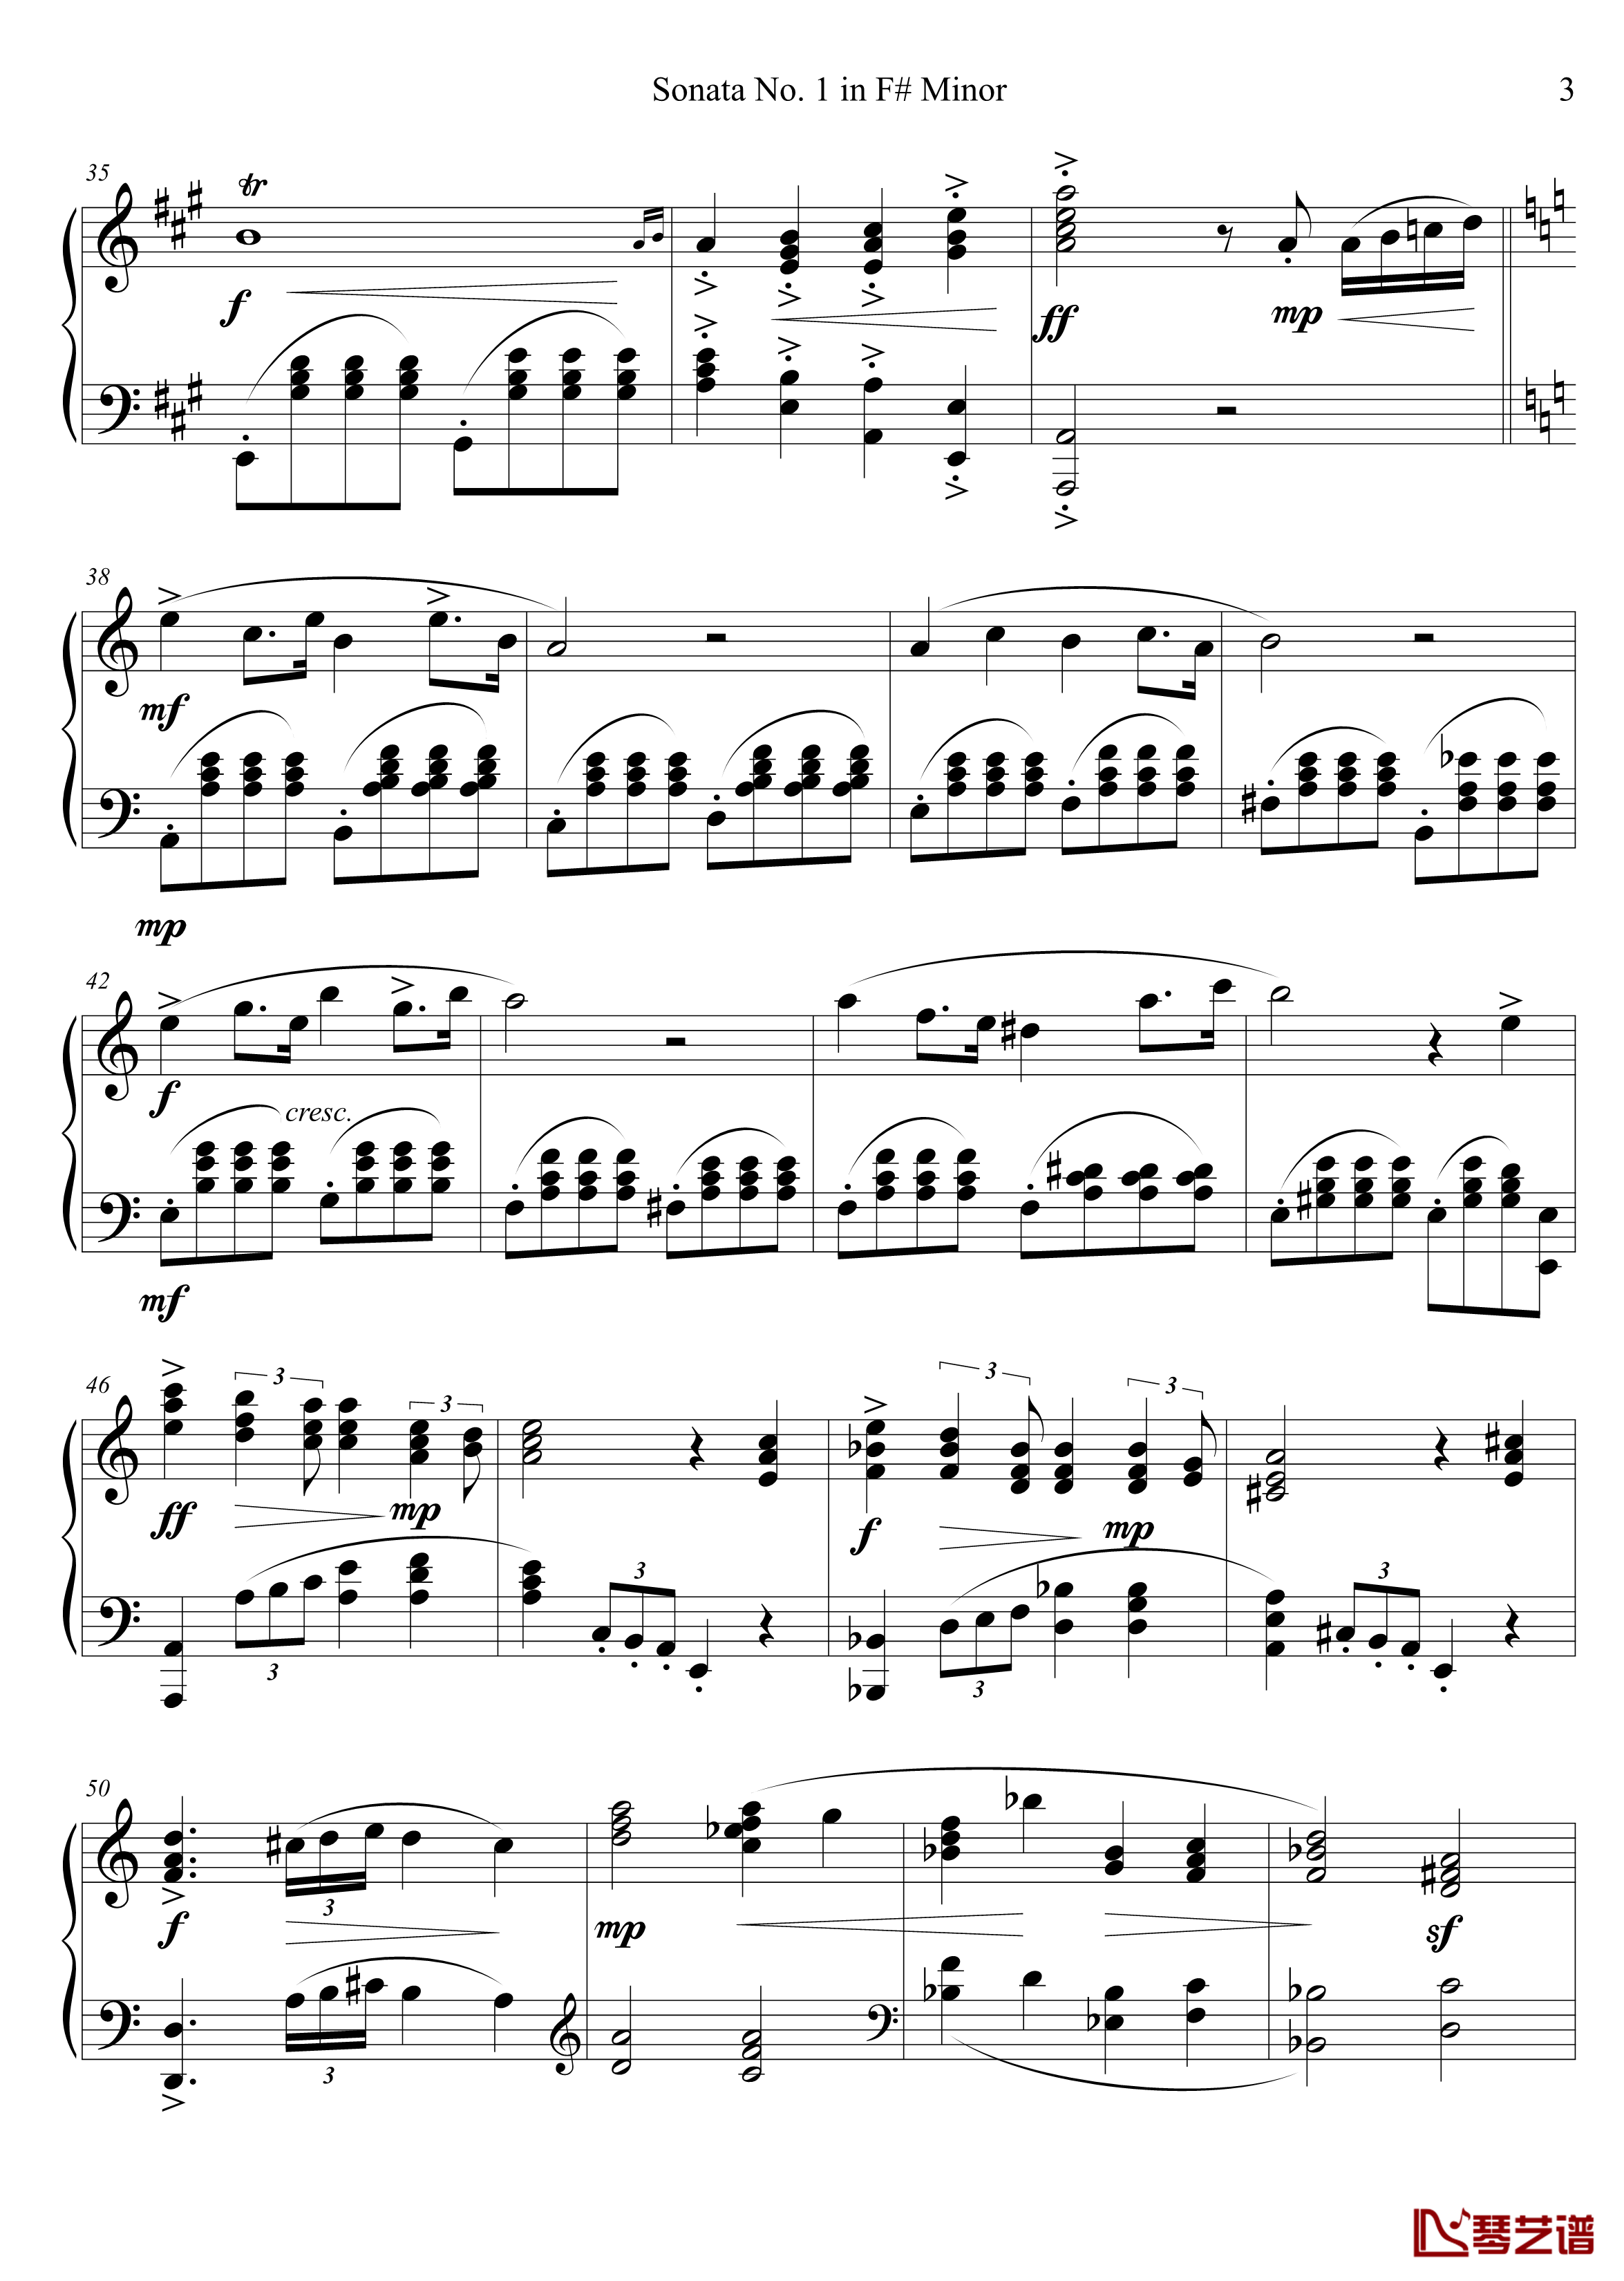 钢琴奏鸣曲No. 1钢琴谱 第一乐章-千古留名3